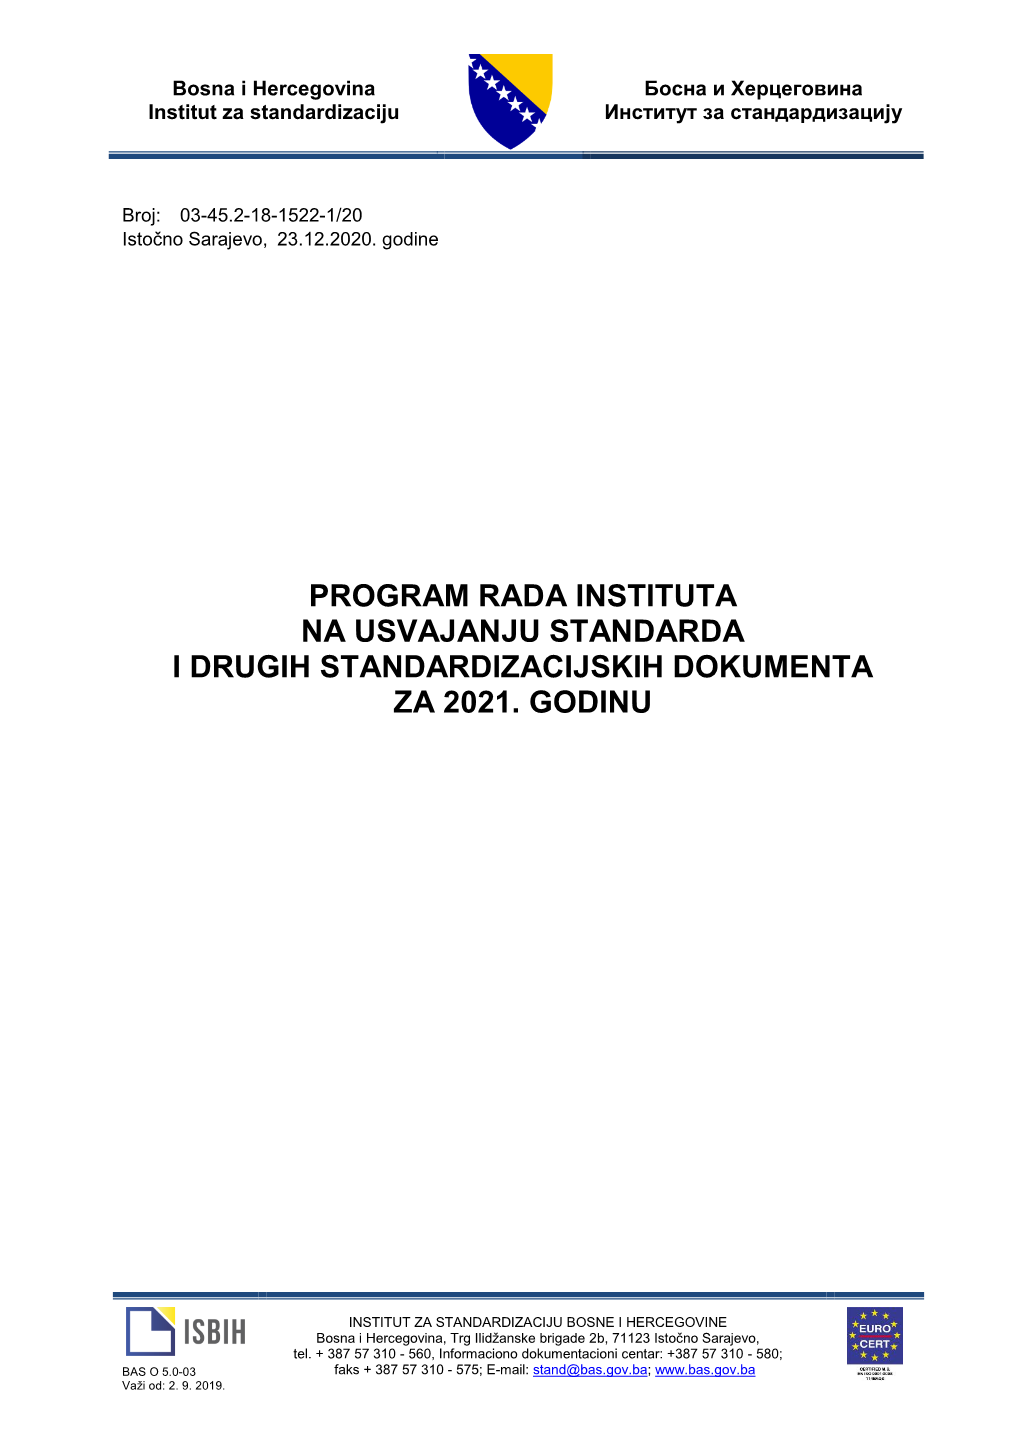 Program Rada Instituta Na Usvajanju Standarda Za 2021